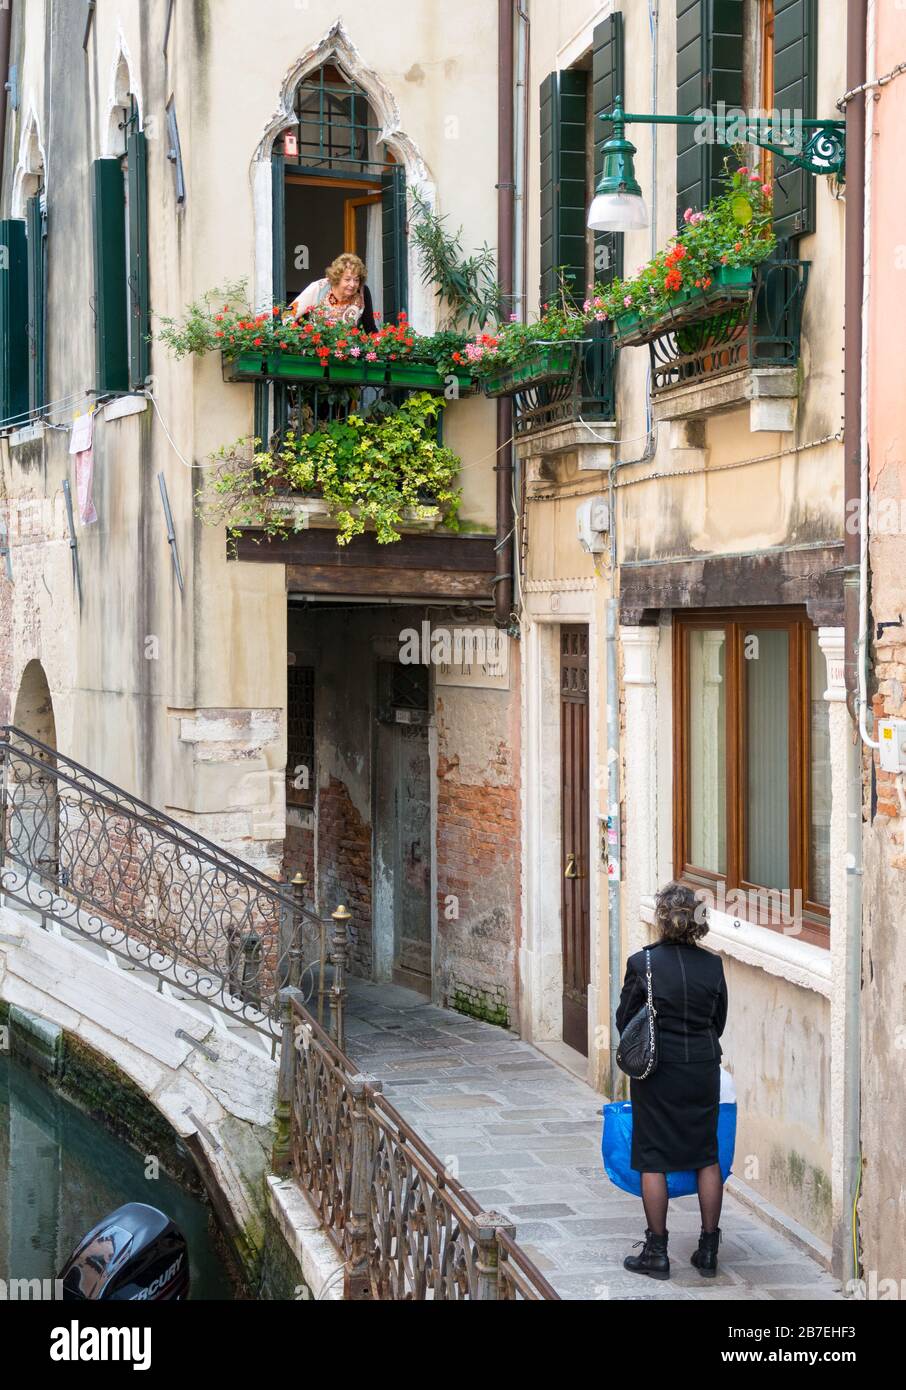 Venedig, Italien - 17. MAI 2019: Eine Szene aus dem Leben der Einwohner Venedigs Stockfoto